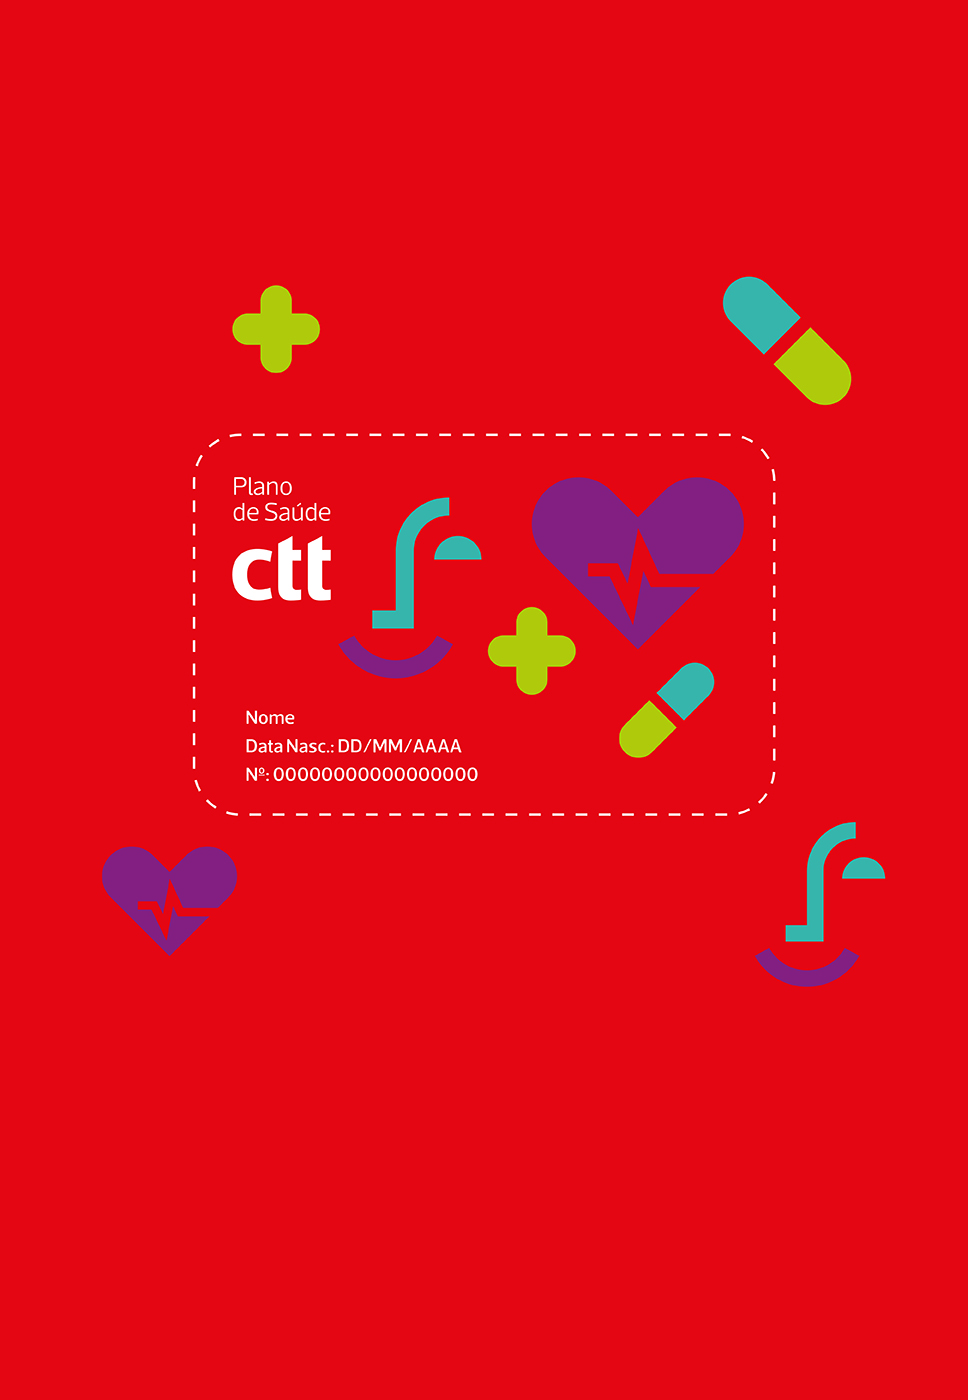 Cartão do Plano de Saúde CTT